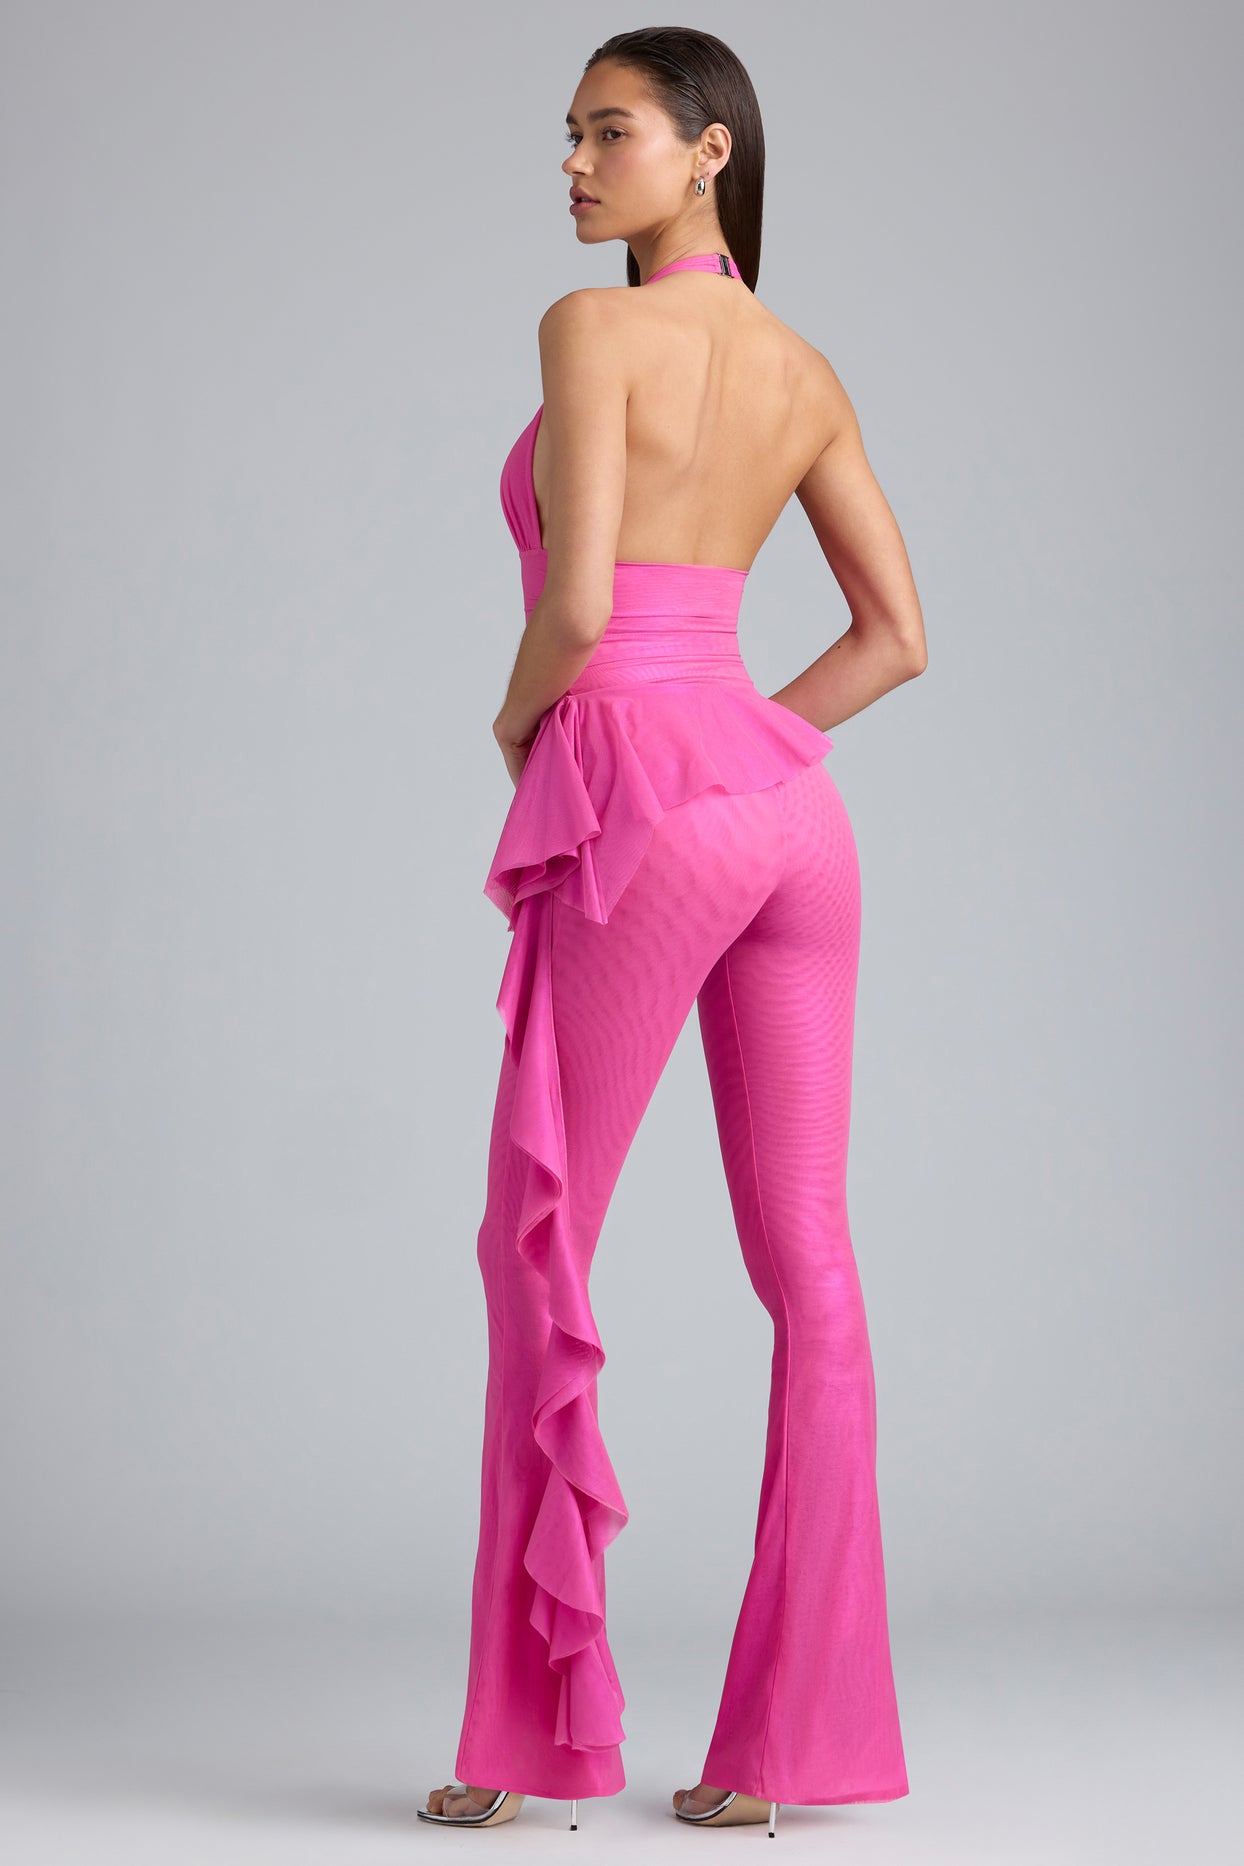 Grand pantalon évasé taille basse à volants métallisés en rose bubblegum